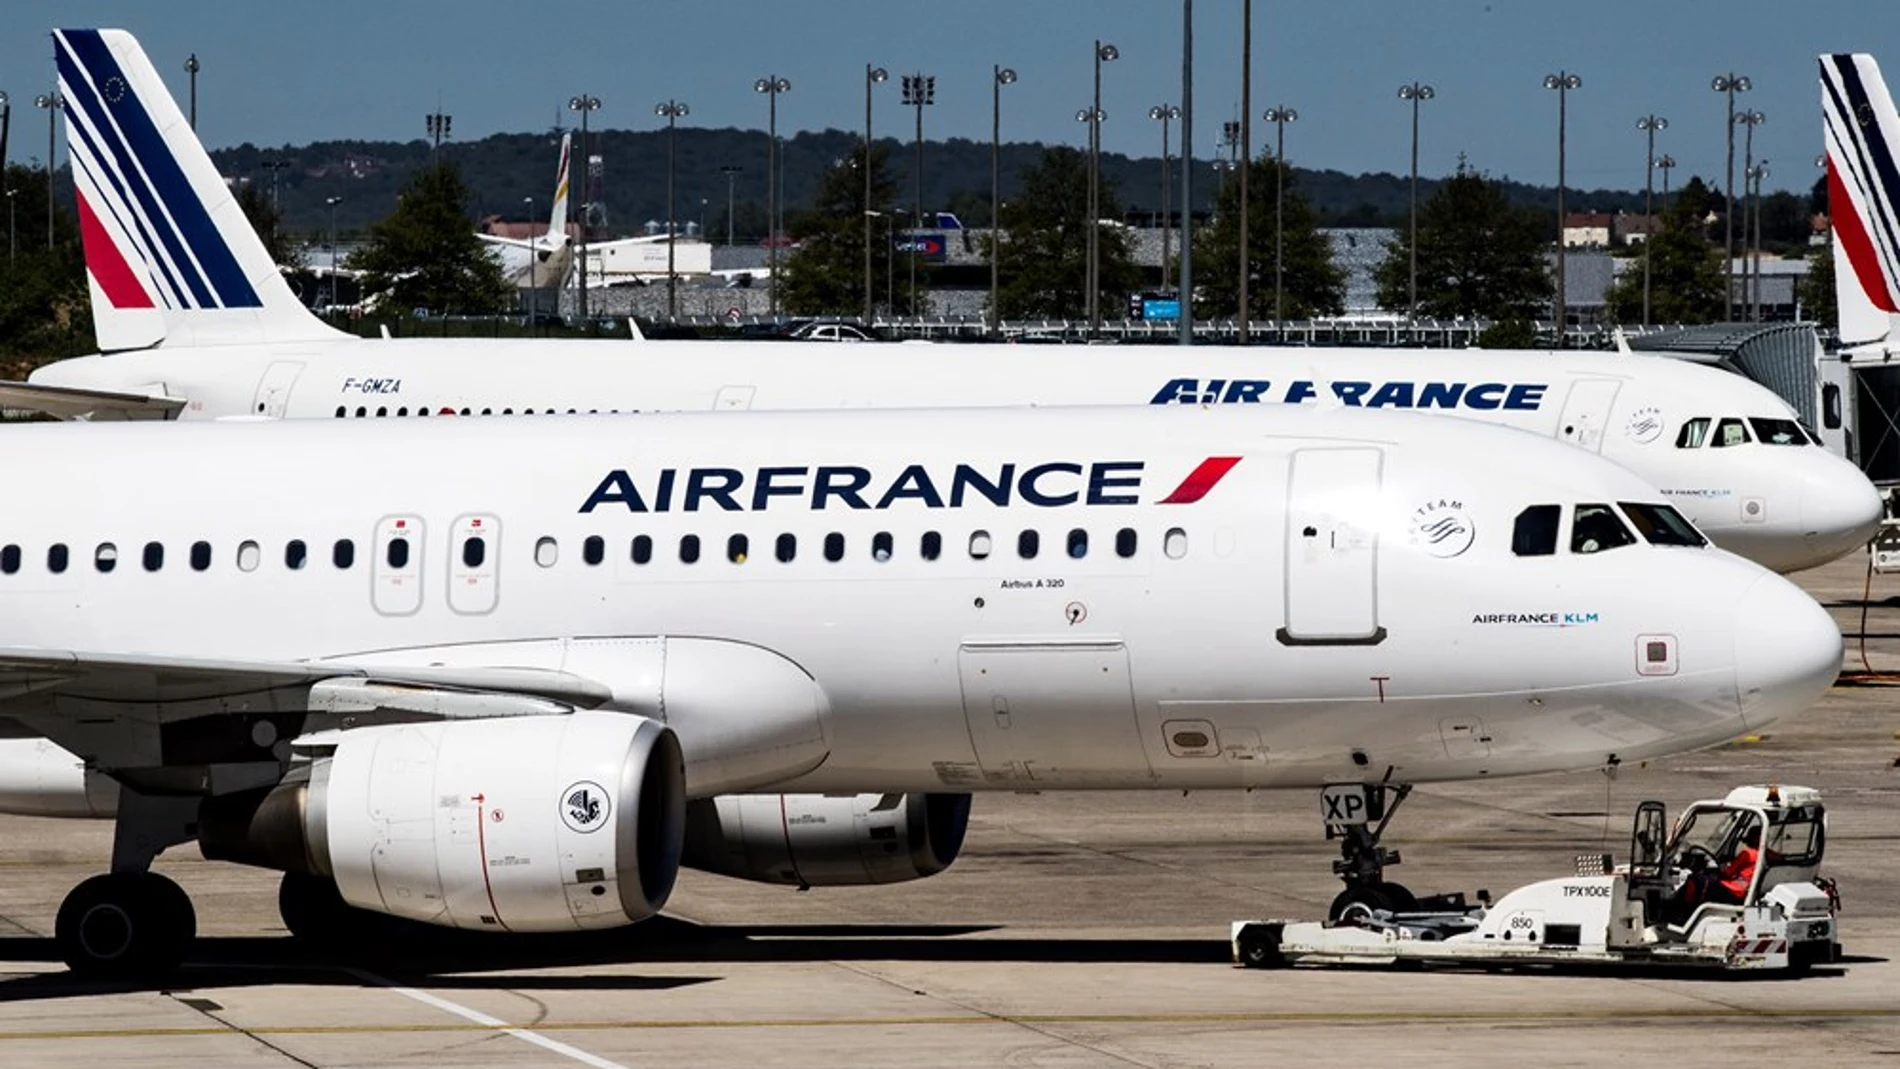 Aviones de la aerolínea Air France aparcan en una de las terminales en el Aeropuerto Charles de Gaulle en París. EFE